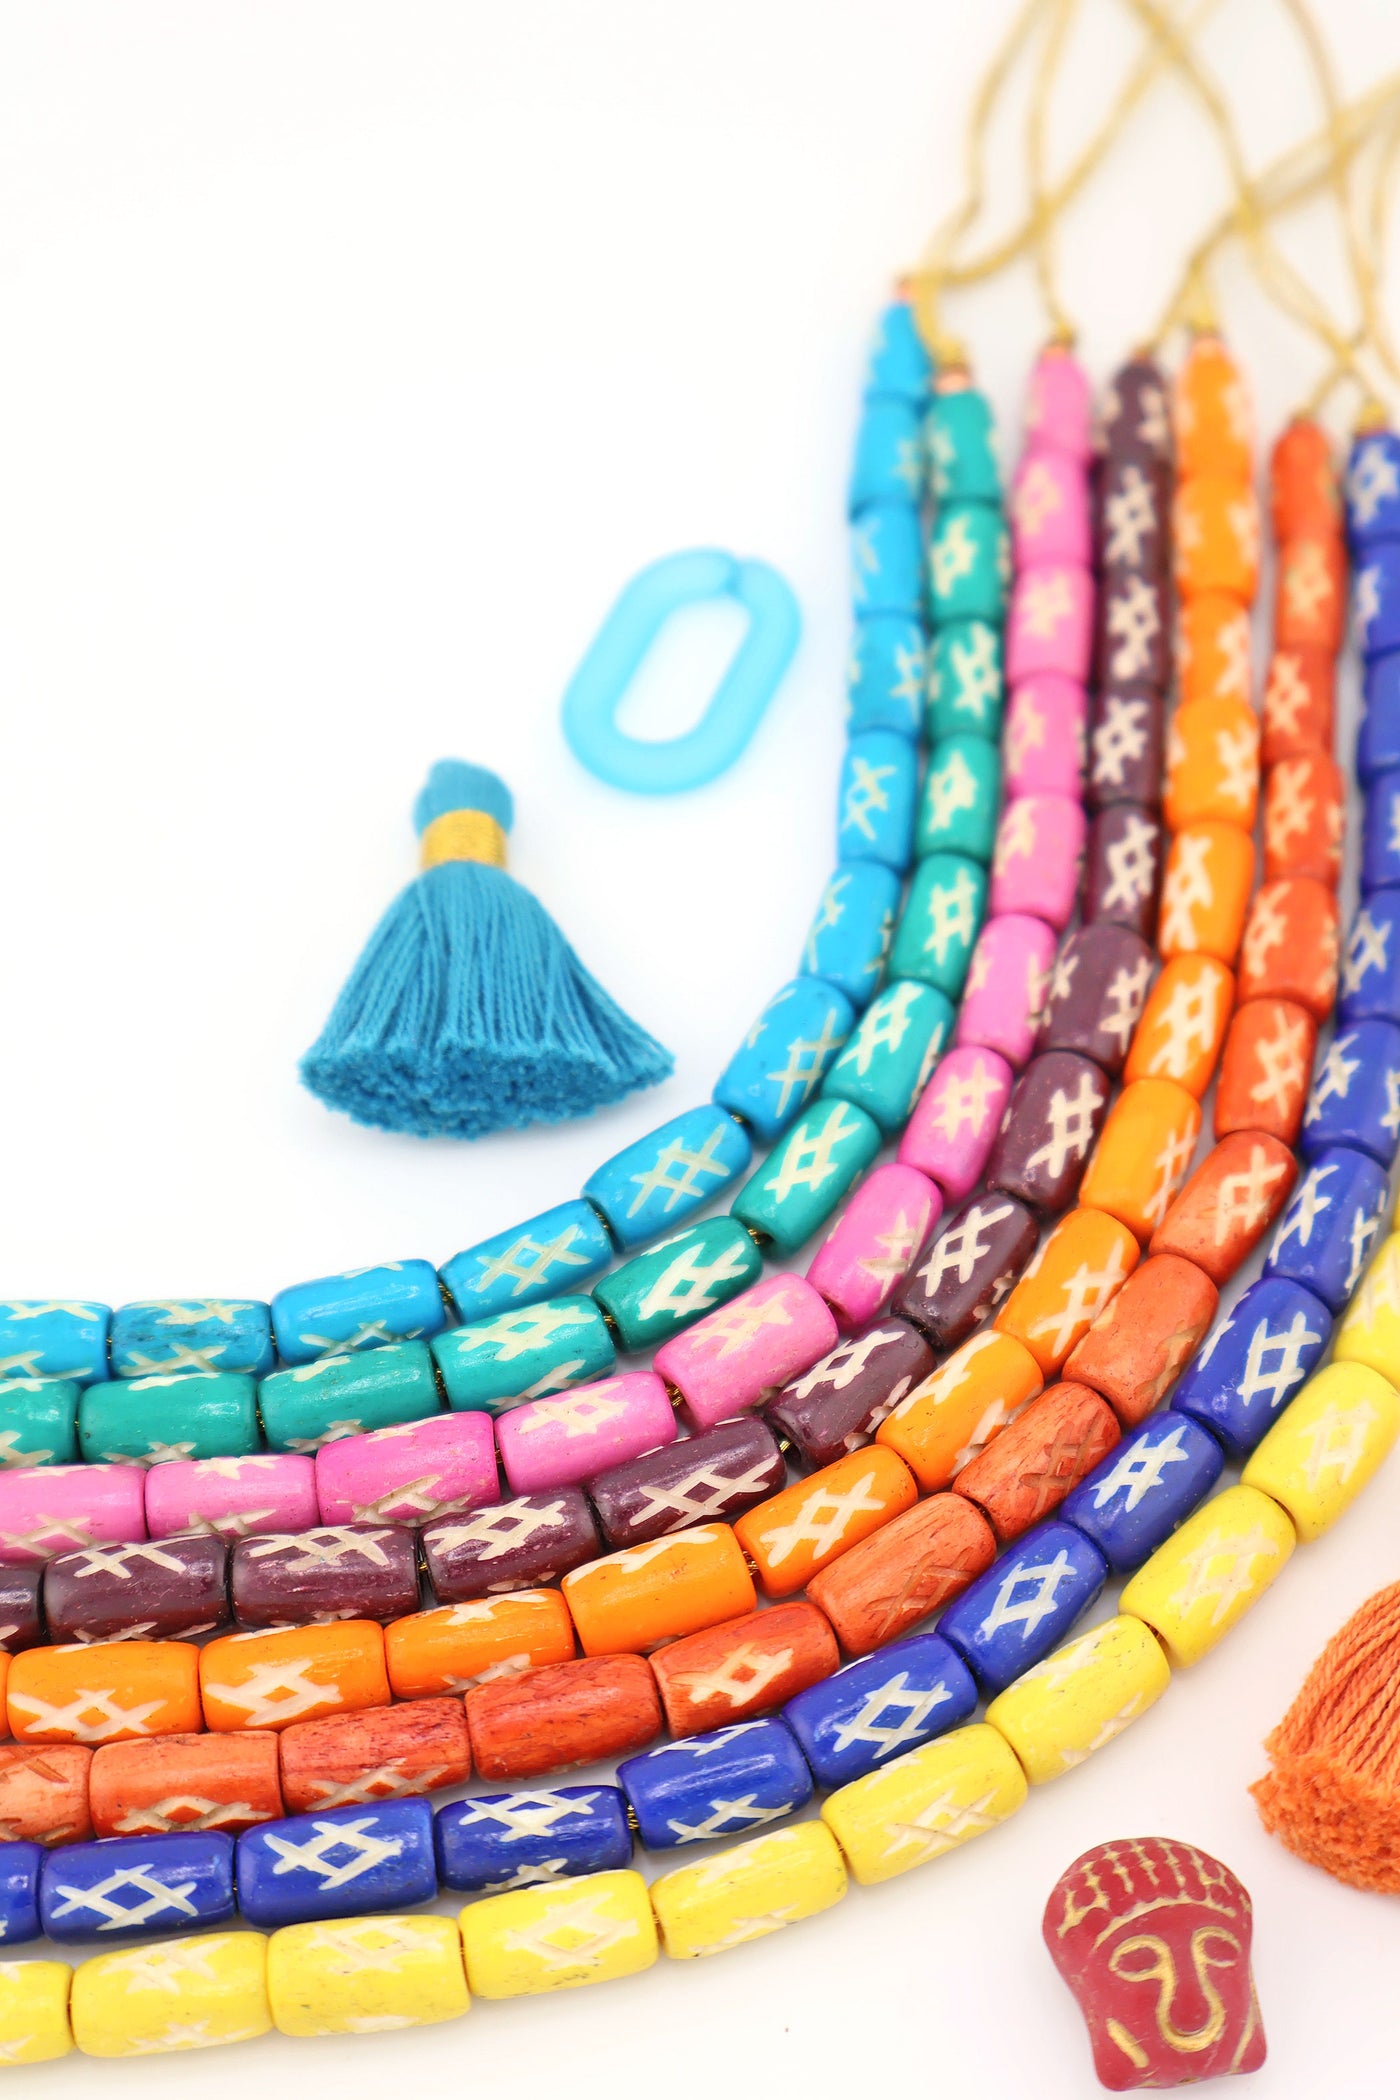 Exclusive Bead Bundle: Assorted Colors Handmade Barrel Bone Beads, 7x12mm, for DIY Beginner Jewelry